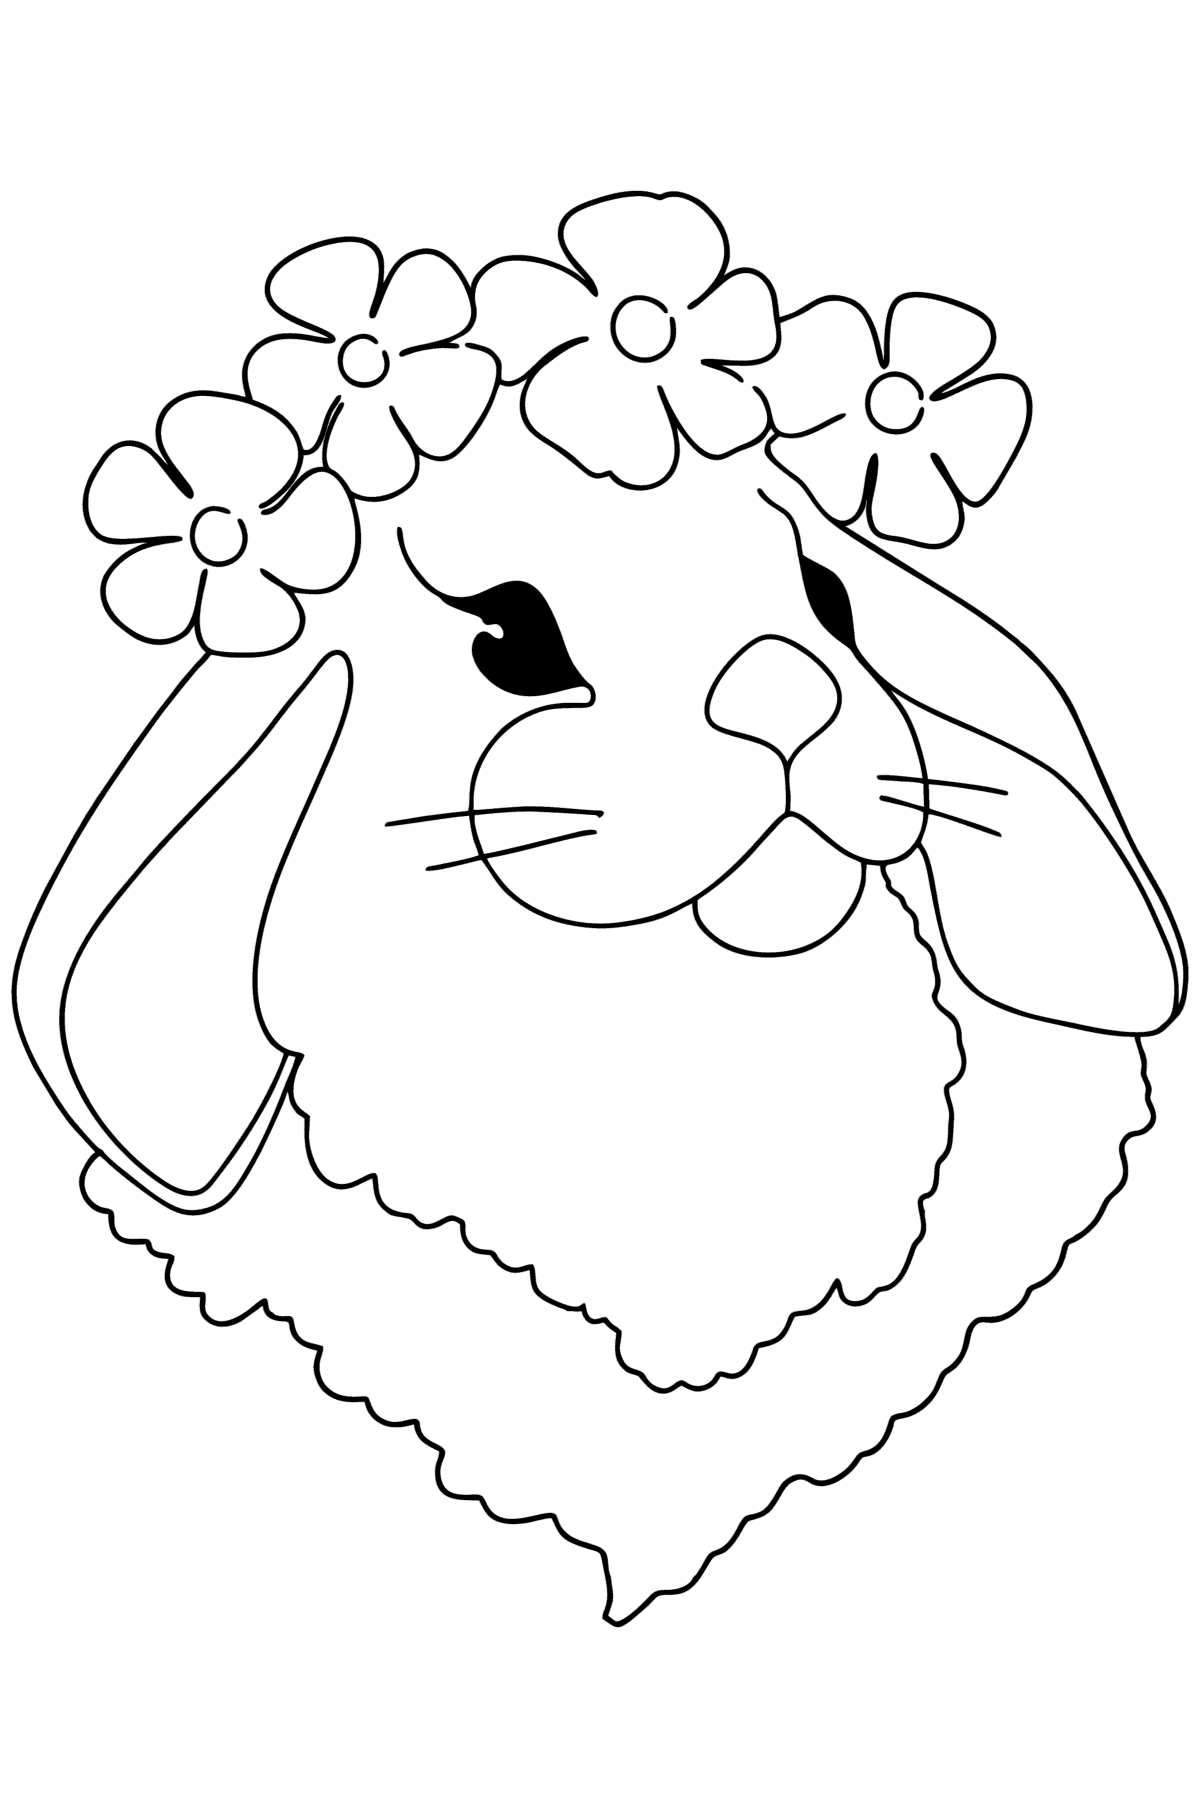 Desenho para colorir da cara de lebre - Imagens para Colorir para Crianças